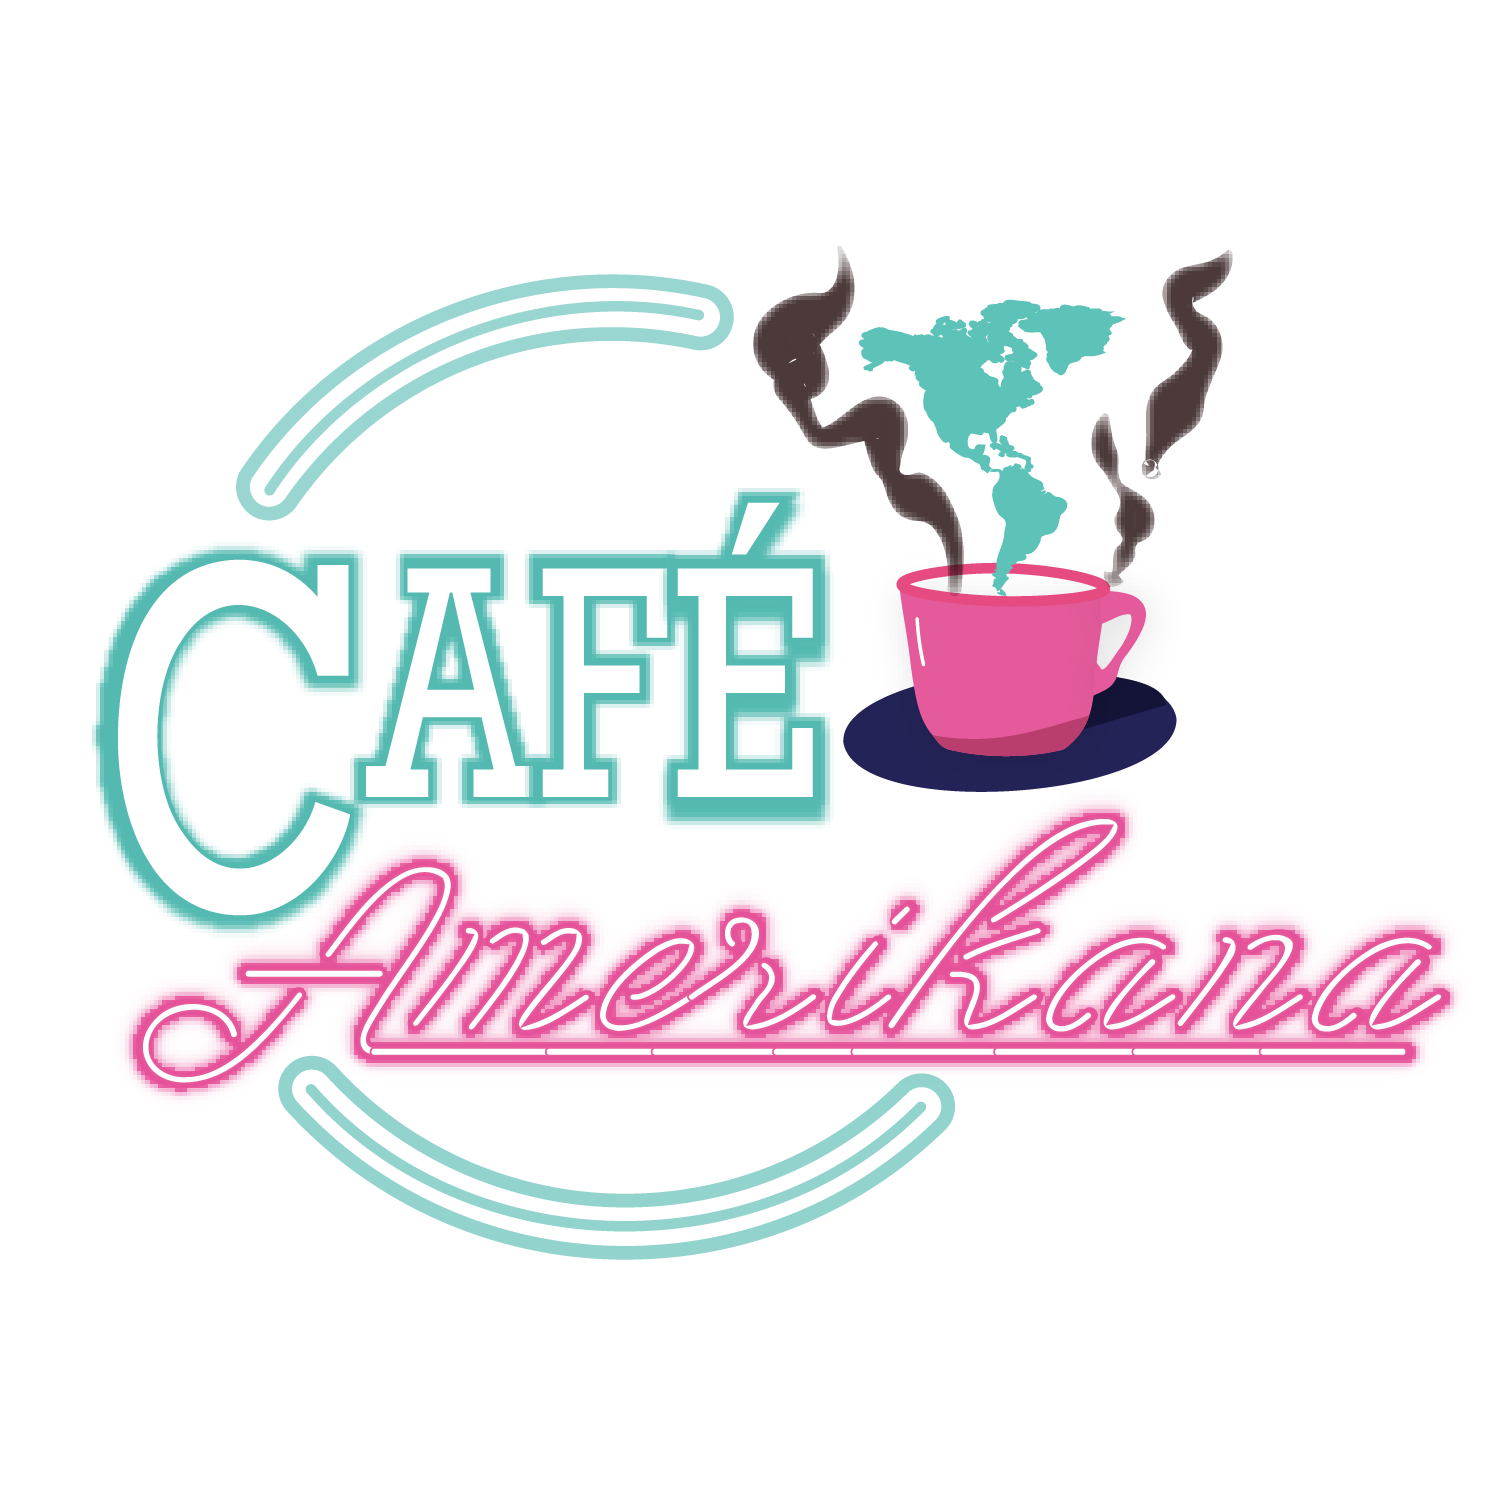 Café Amerikana